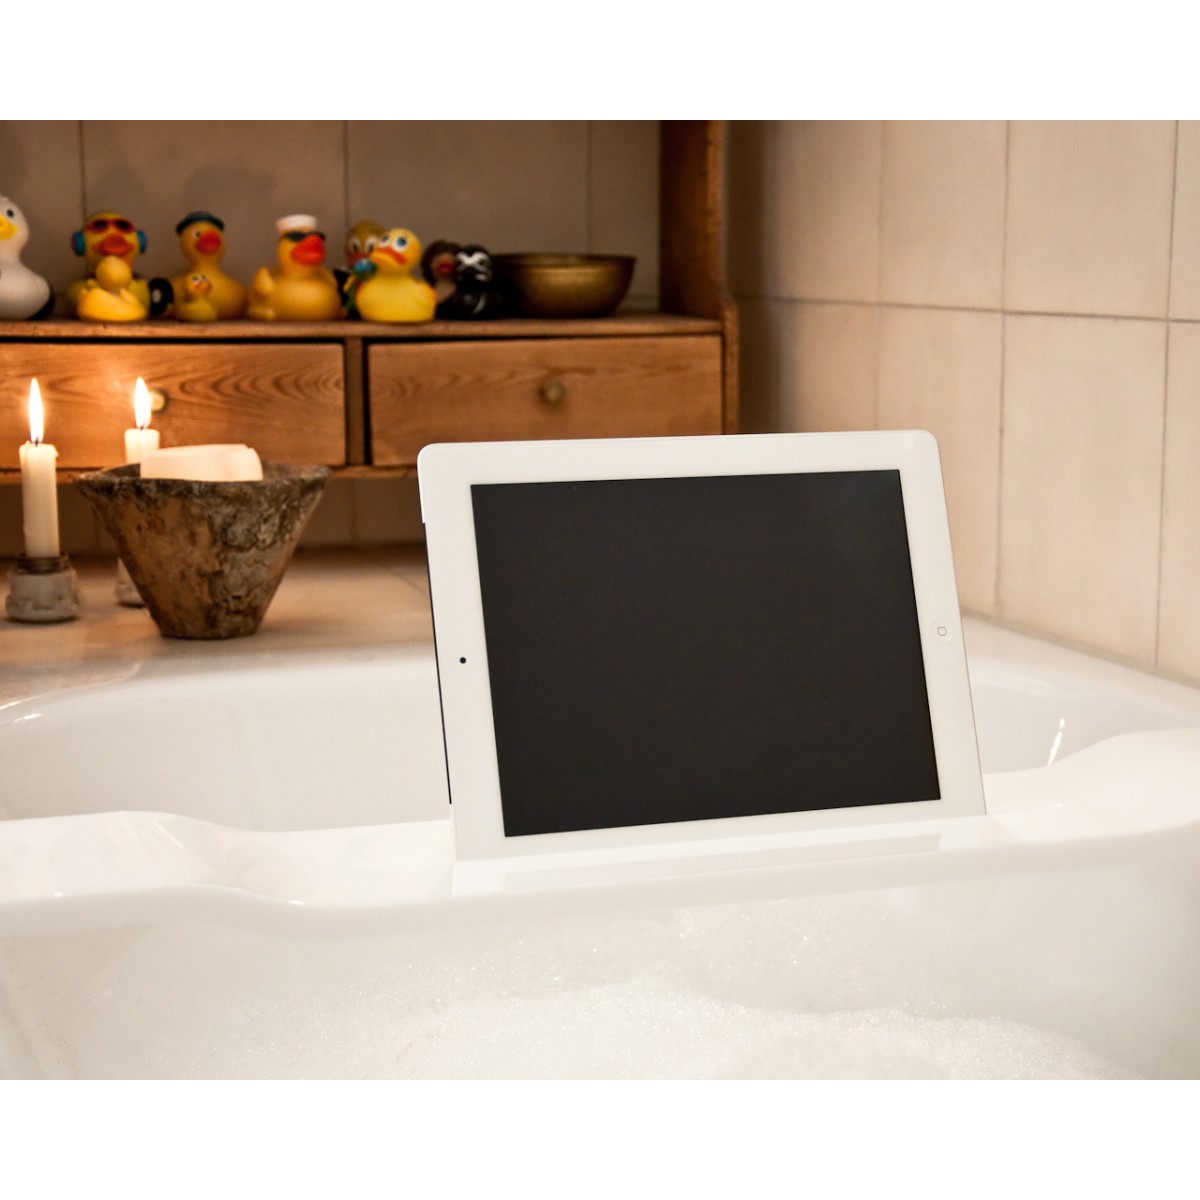 WOOD U? WAVE - Halterung / Halter für iPad und Tablet für die Badewanne